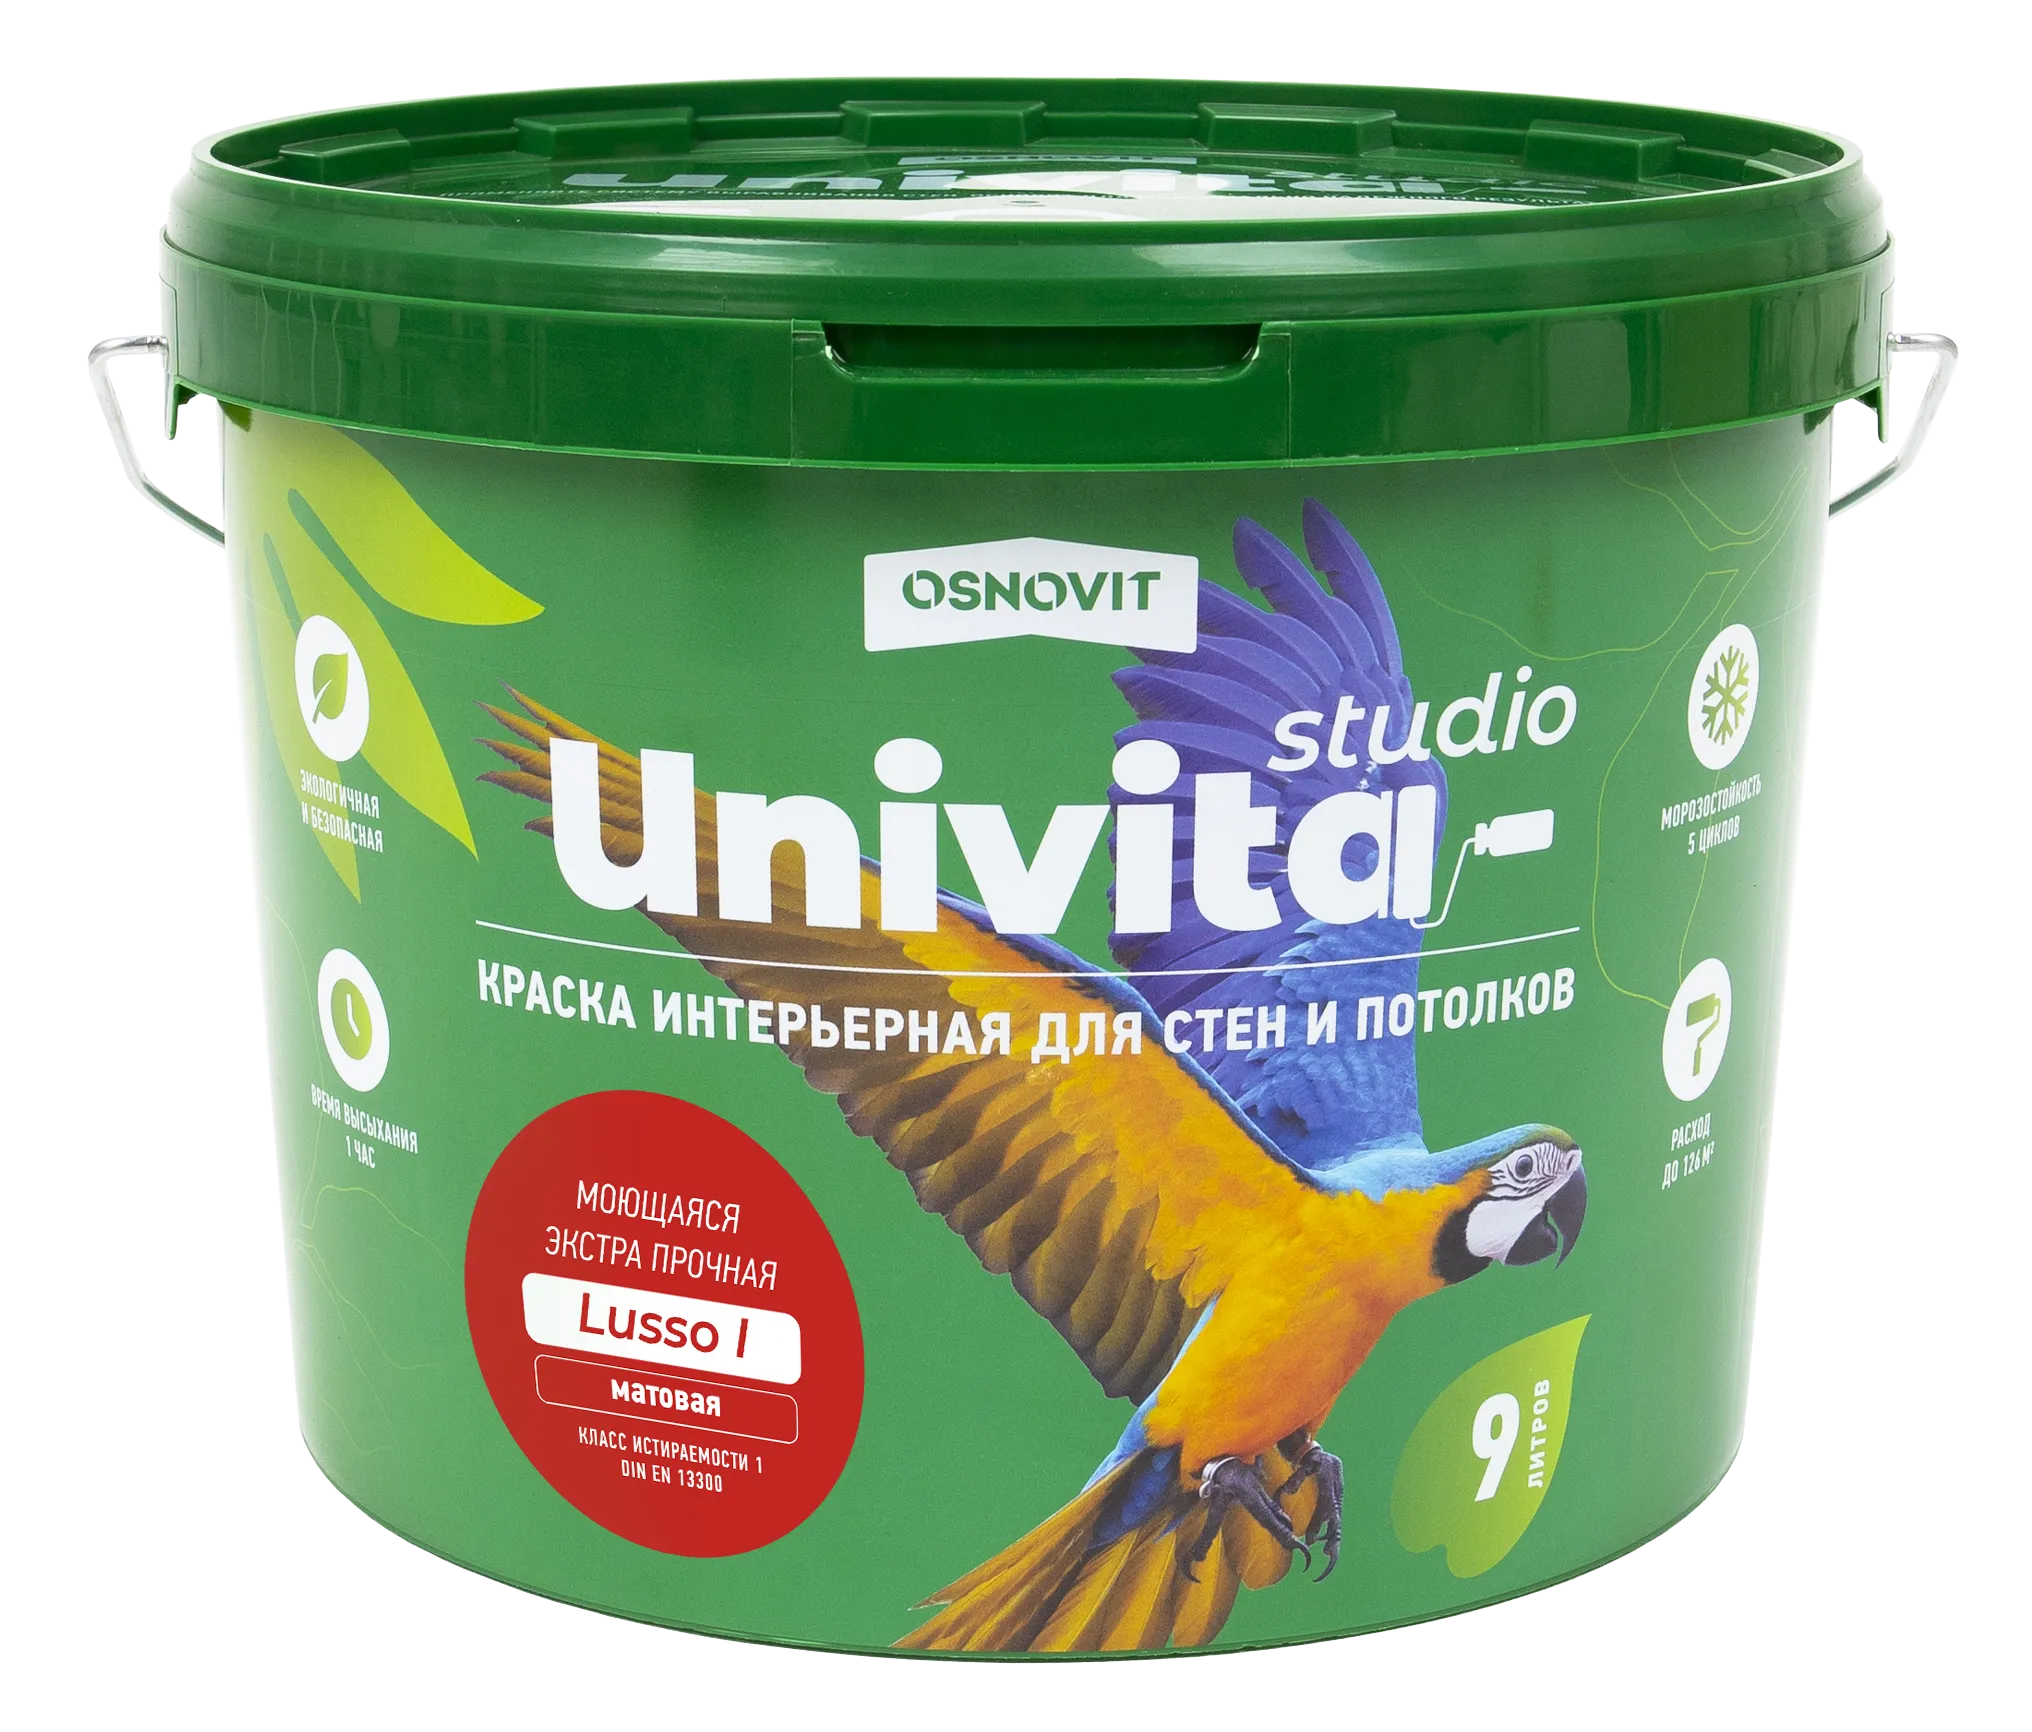 Интерьерная краска матовая моющаяся экстрапрочная для стен и потолков ОСНОВИТ UNIVITA STUDIO Lusso I САс991 М7 (База С) 2,7 л